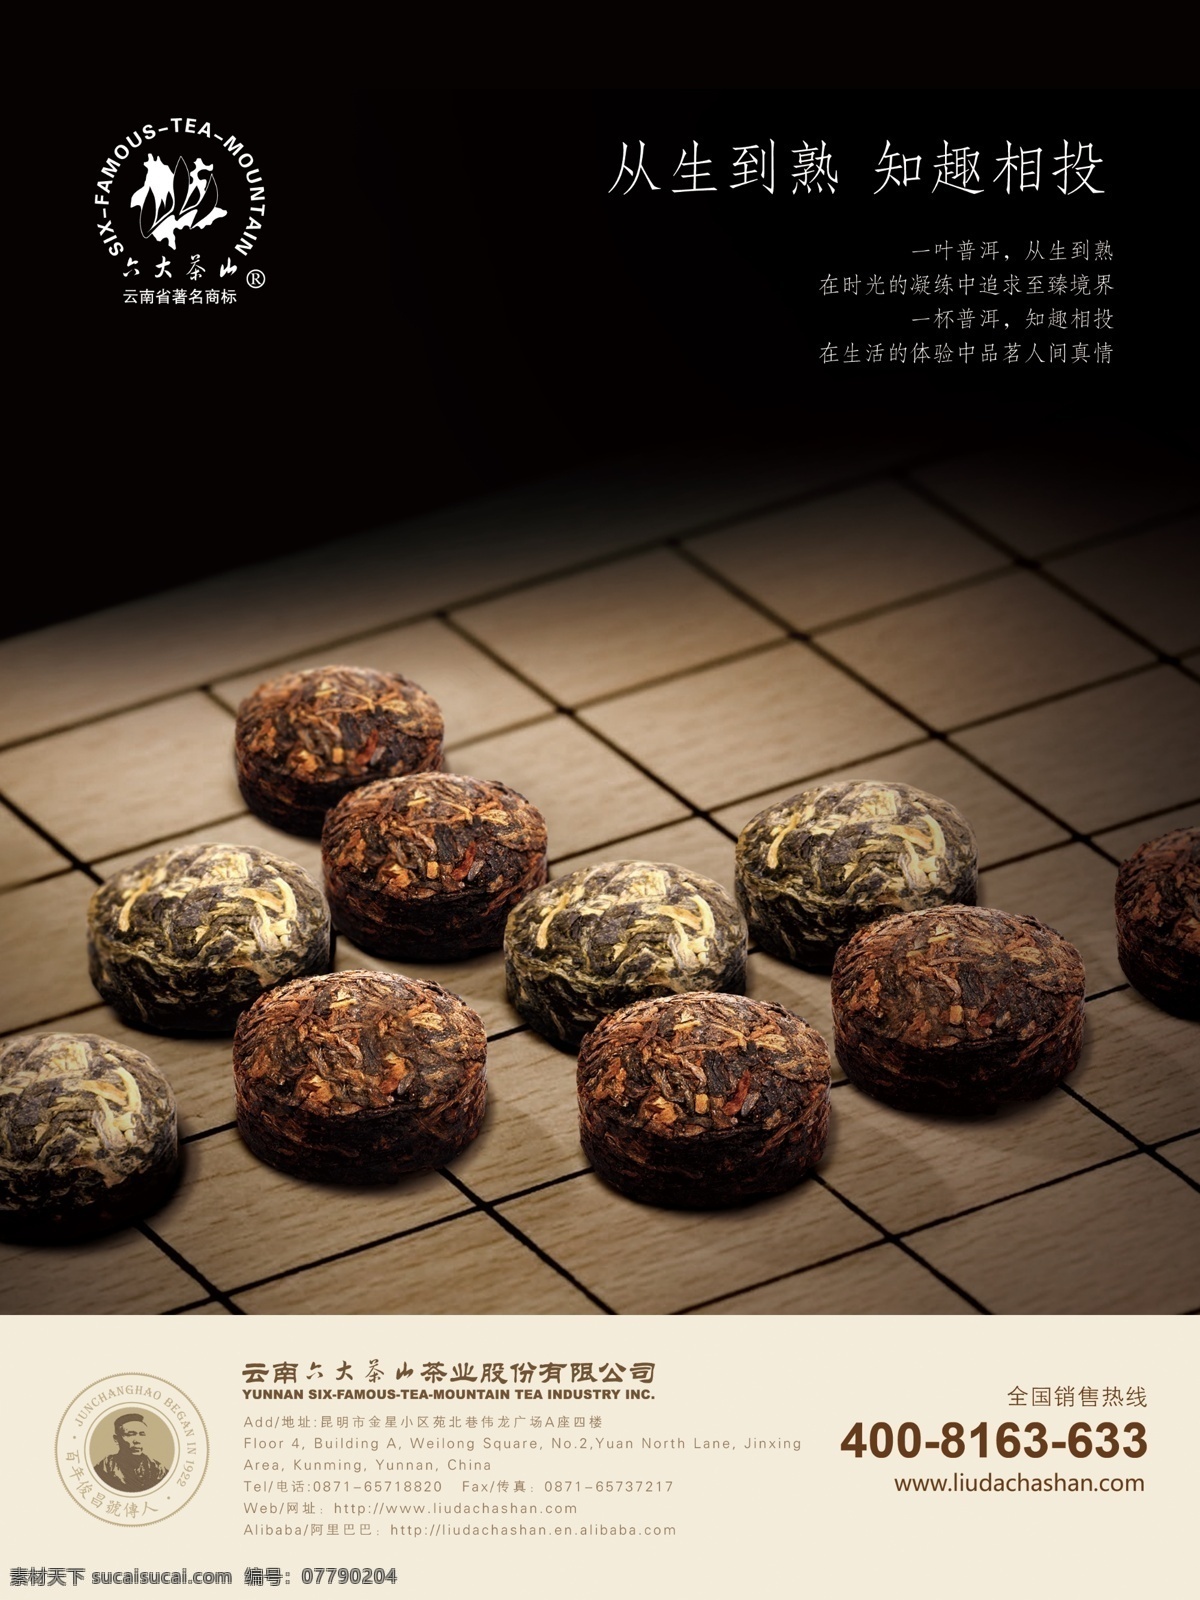 六大 茶山 茶叶 广告 棋子 宣传 中国文化 海报 六大茶山 原创设计 原创海报